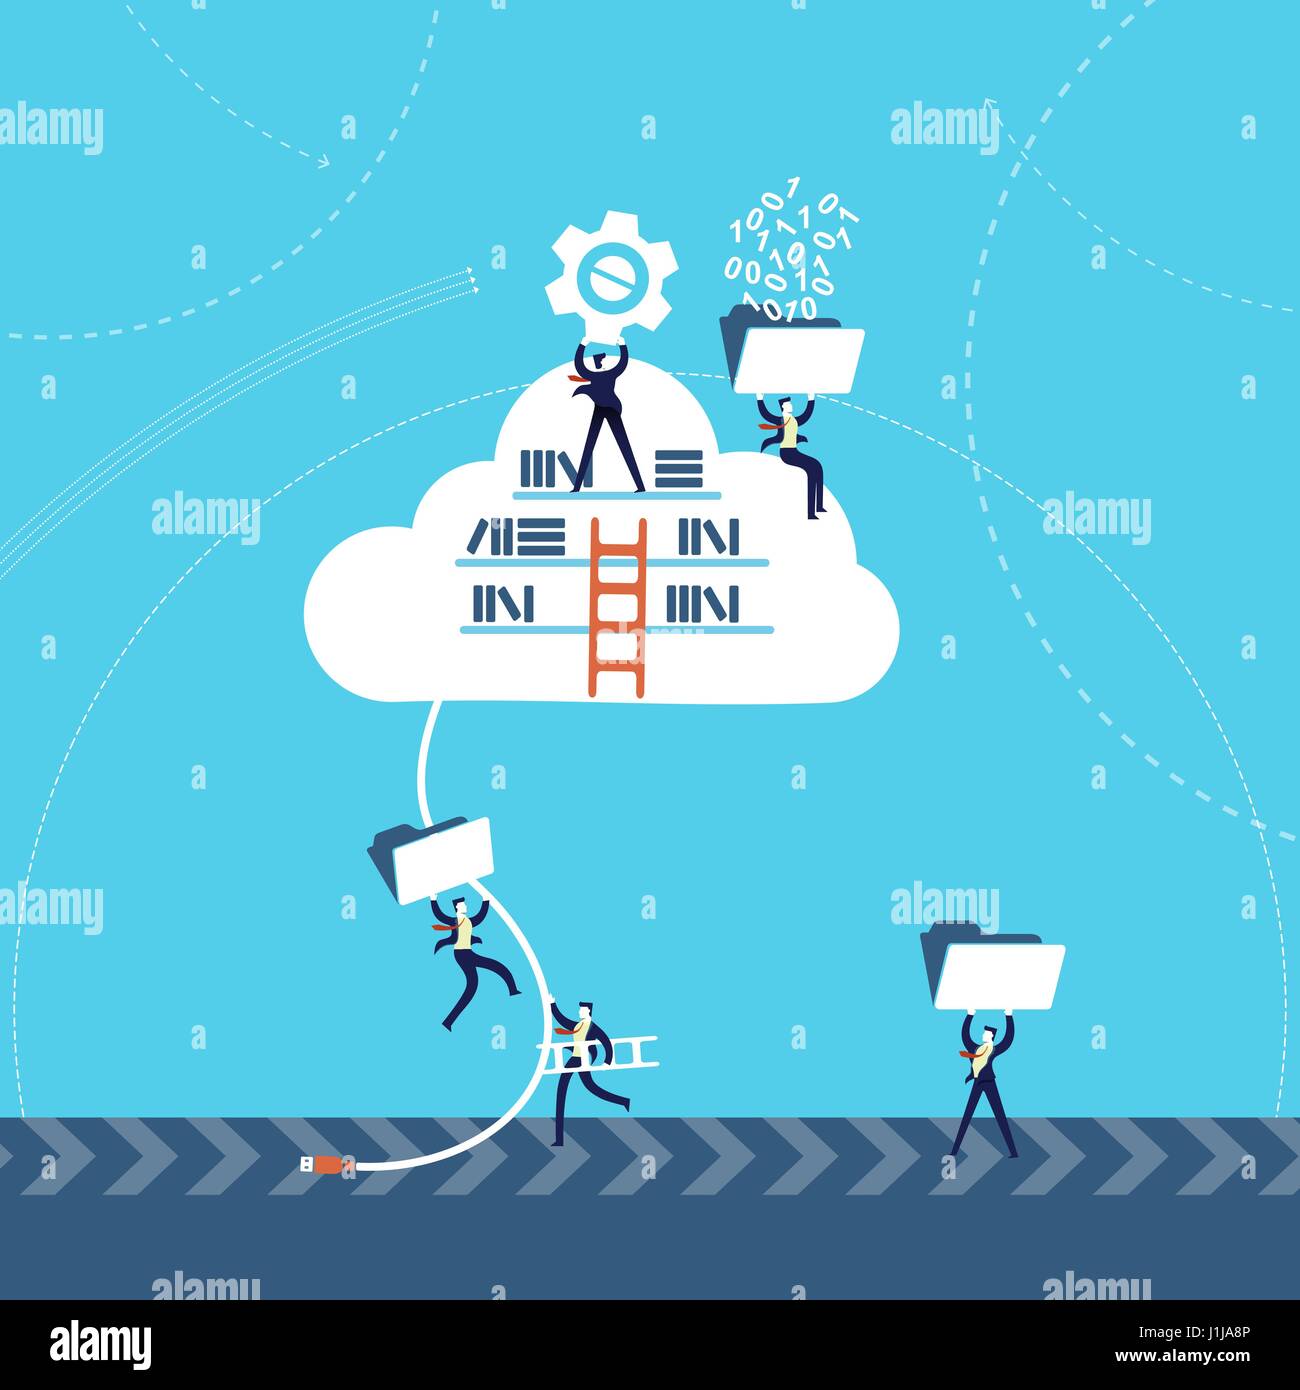 La technologie de l'entreprise concept illustration, hommes d'affaires à l'aide de l'équipe de stockage de données en nuage sur le réseau internet. Vecteur EPS10. Illustration de Vecteur